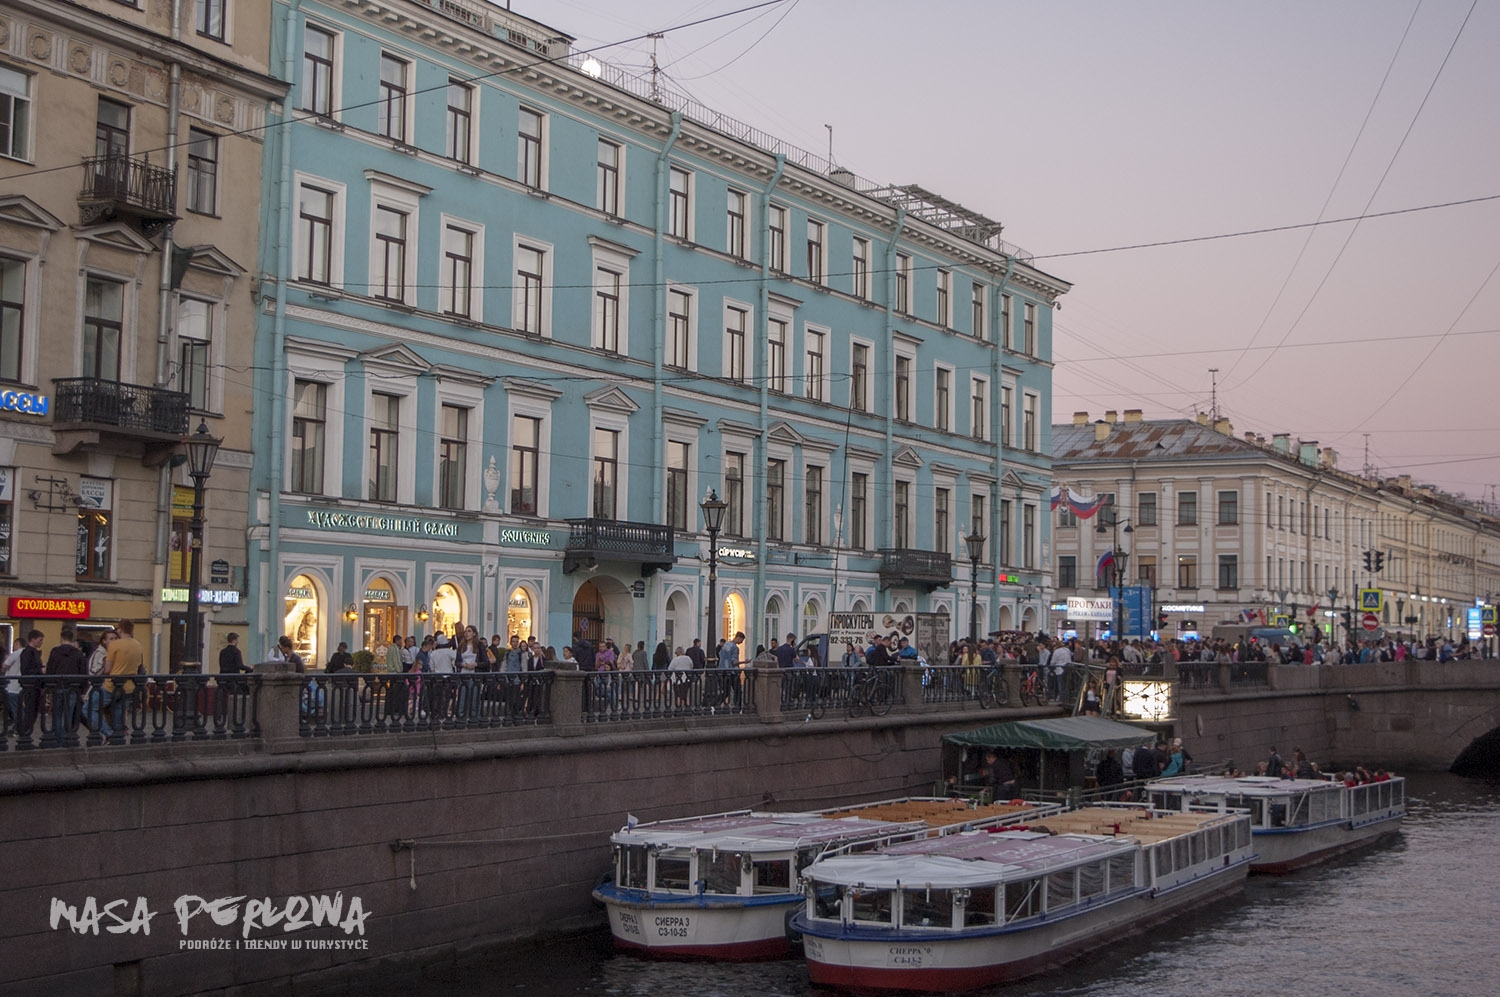 Sankt Petersburg Fontanka